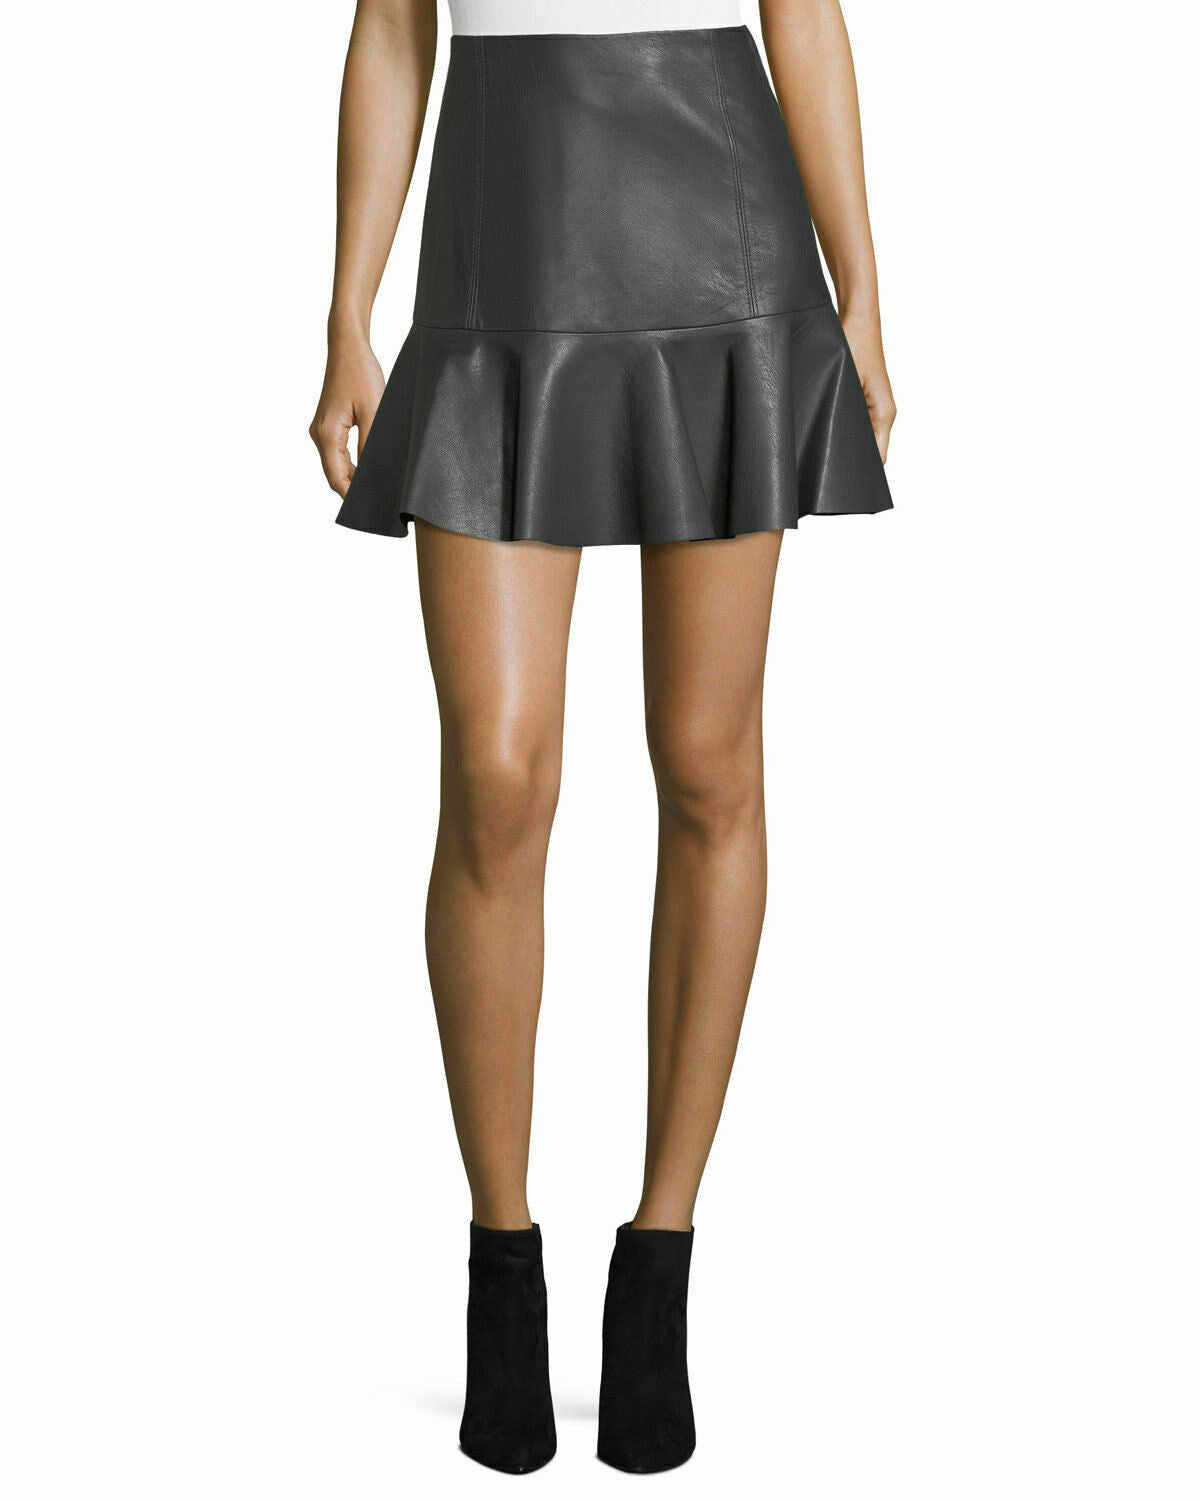 NOORA Black Hot Women's Genuine Lambskin Real Leather Skirt Soft Mini Skirt IN2